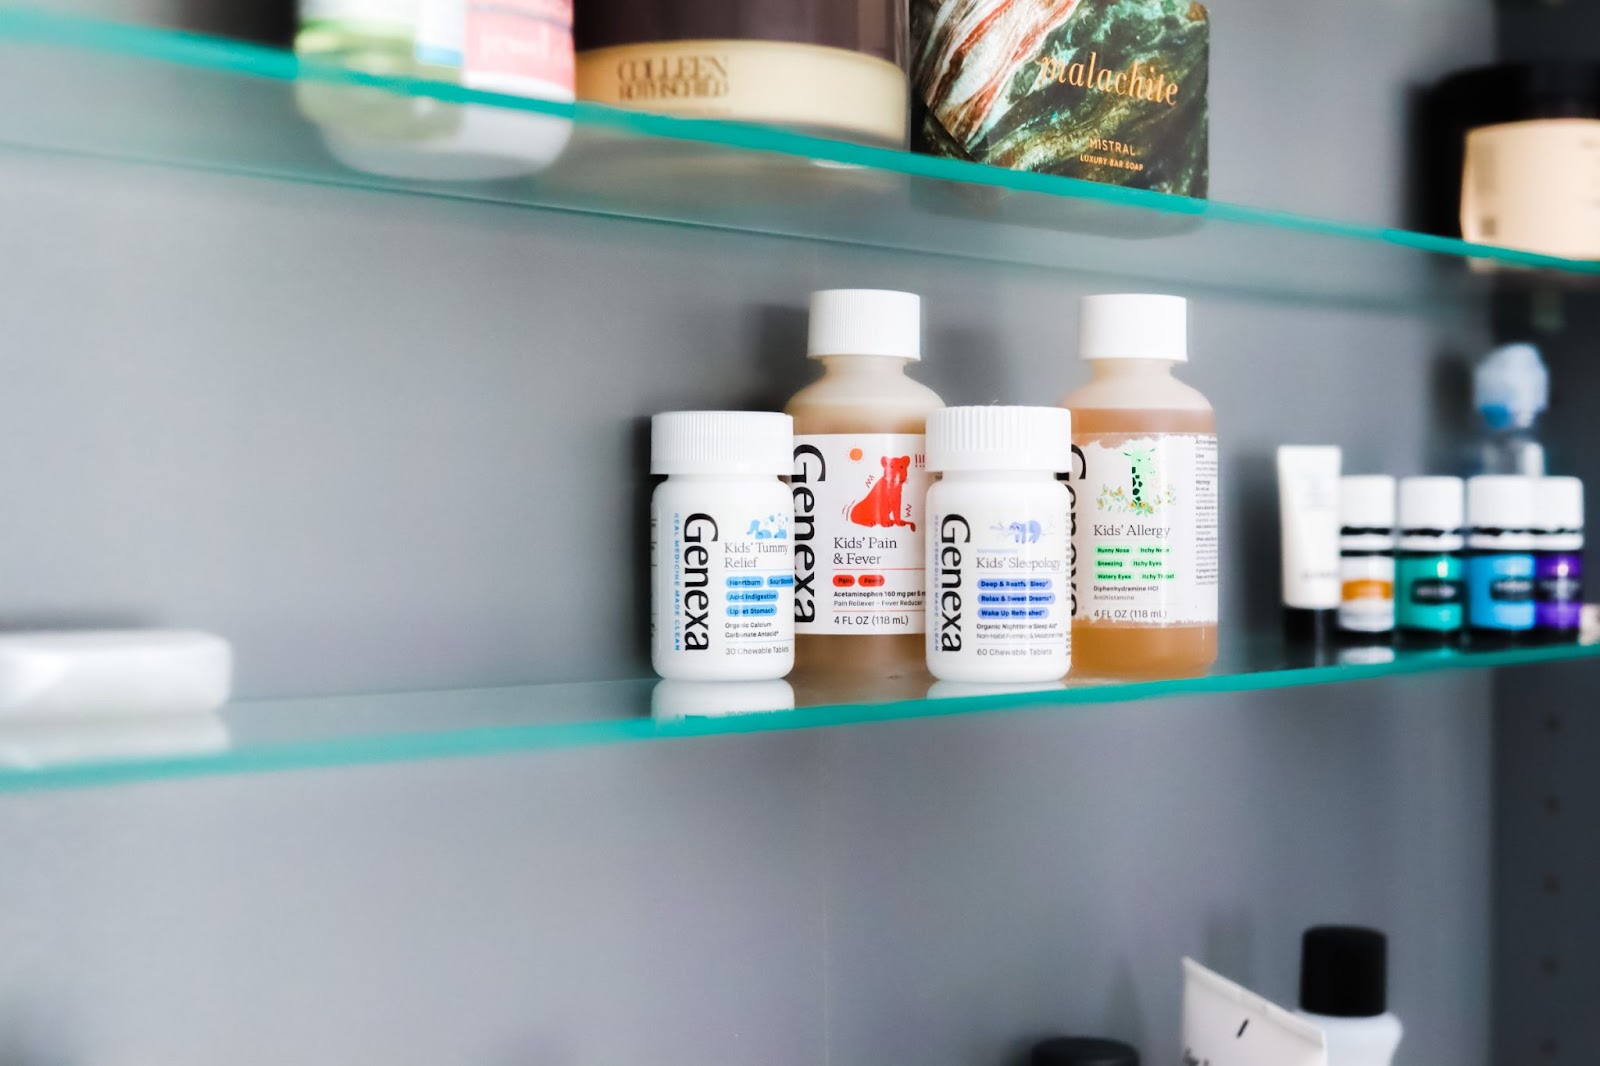 Medicine Cabinet Ideas by popular Atlanta lifestyle blog, City Peach: image of Gneexa medicine products in a medicine cabinet. 